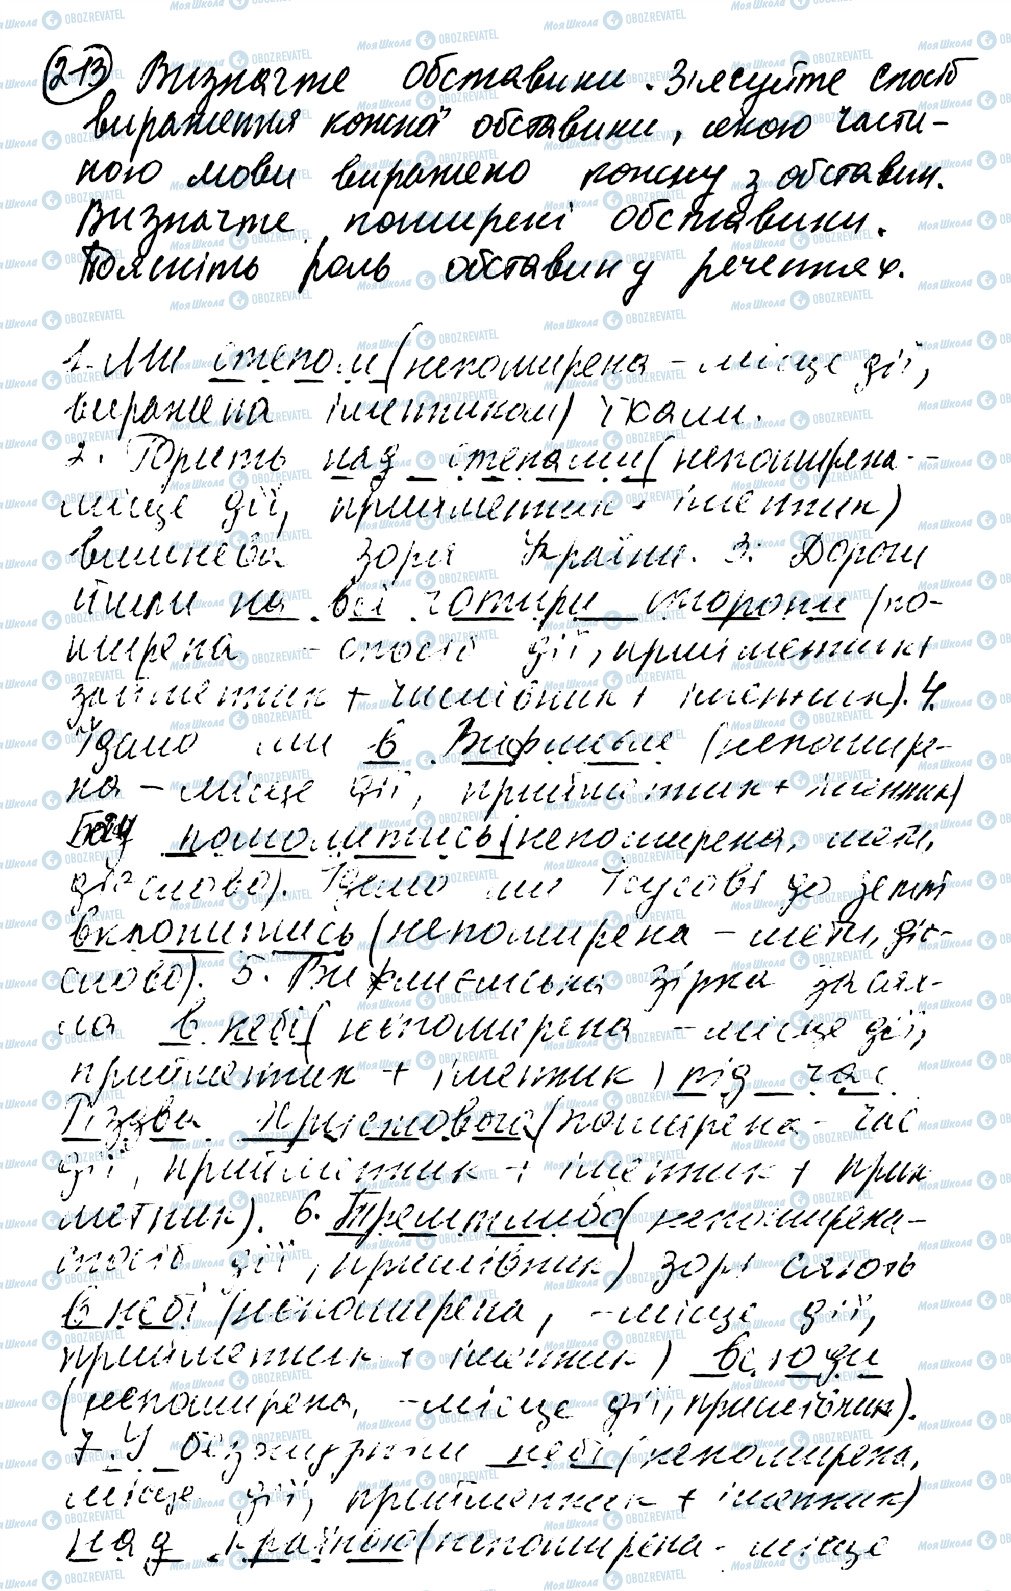 ГДЗ Українська мова 8 клас сторінка 213